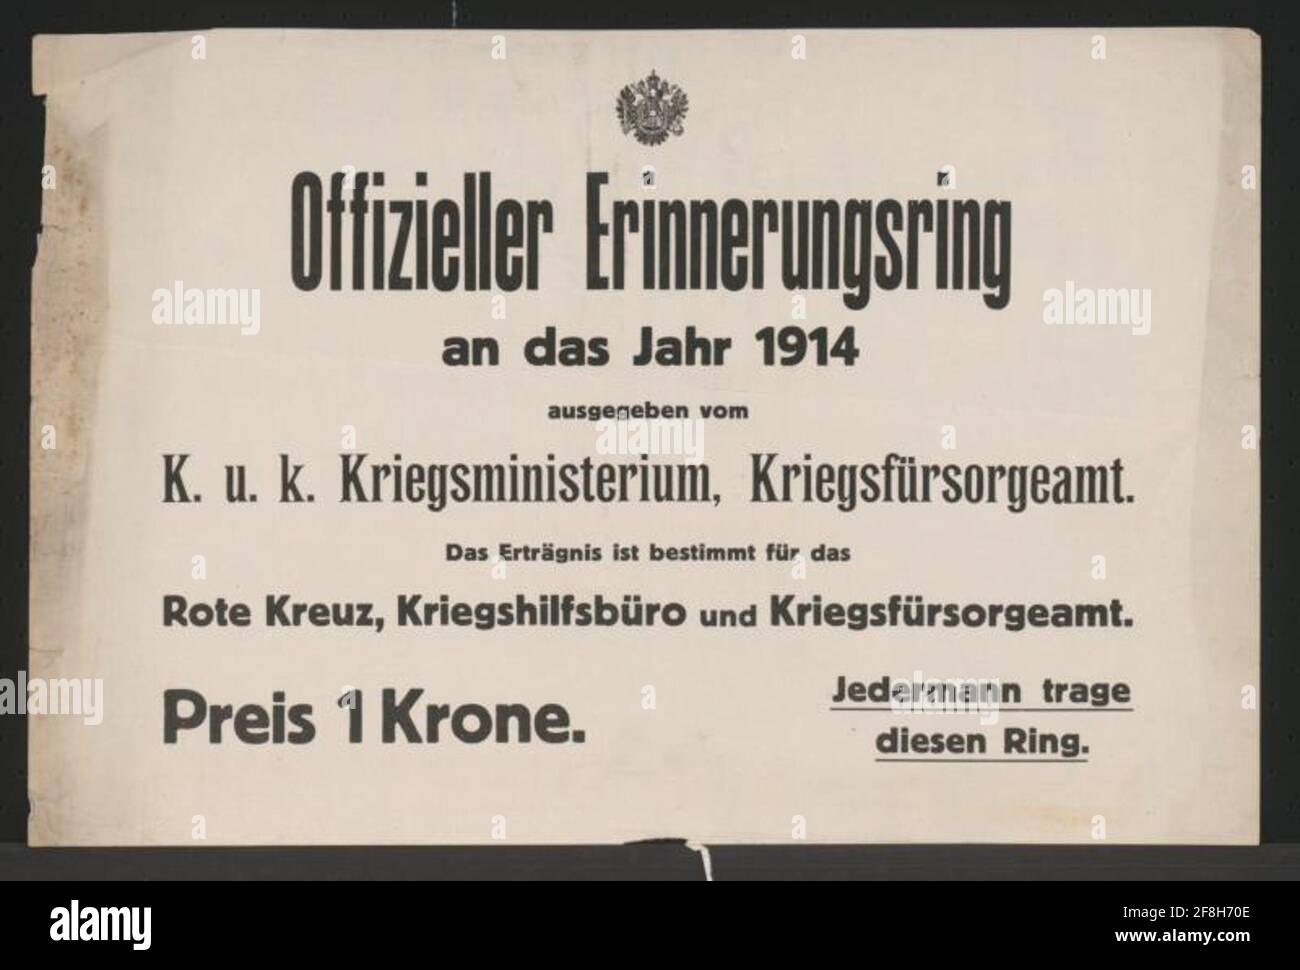 Anello ufficiale del memoriale per l'anno 1914 - Vienna rilasciato da K.U.K. Ministero della guerra, Ufficio di guerra FürSorge - reddito per la Croce Rossa, Ufficio di assistenza alla guerra e Ufficio di guerra Fürsorge - Prezzo 1 corona - 'tutti indossano questo anello Foto Stock